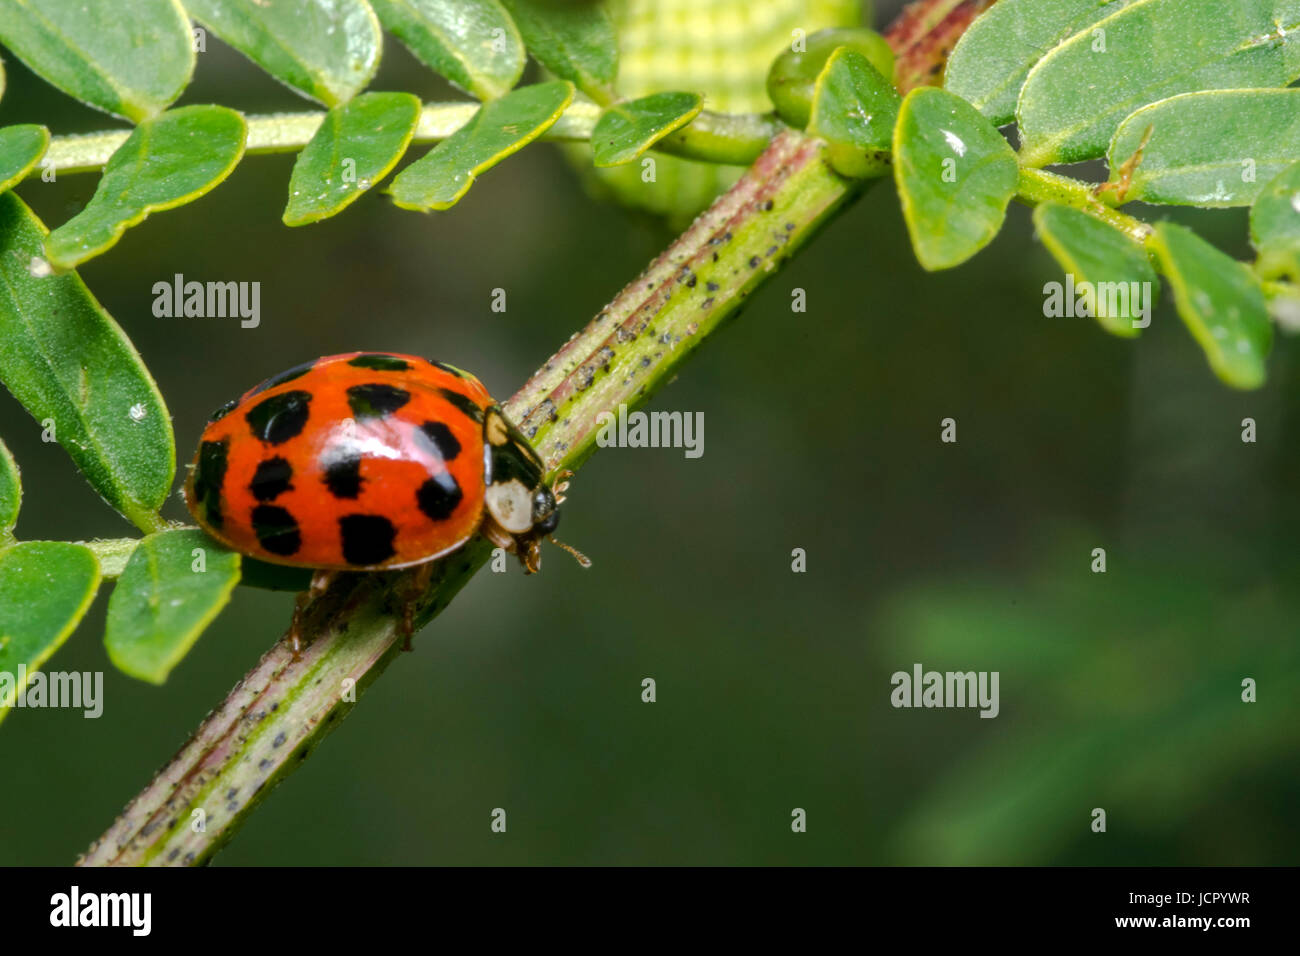 Orange lady bug with black dots Stock Photo